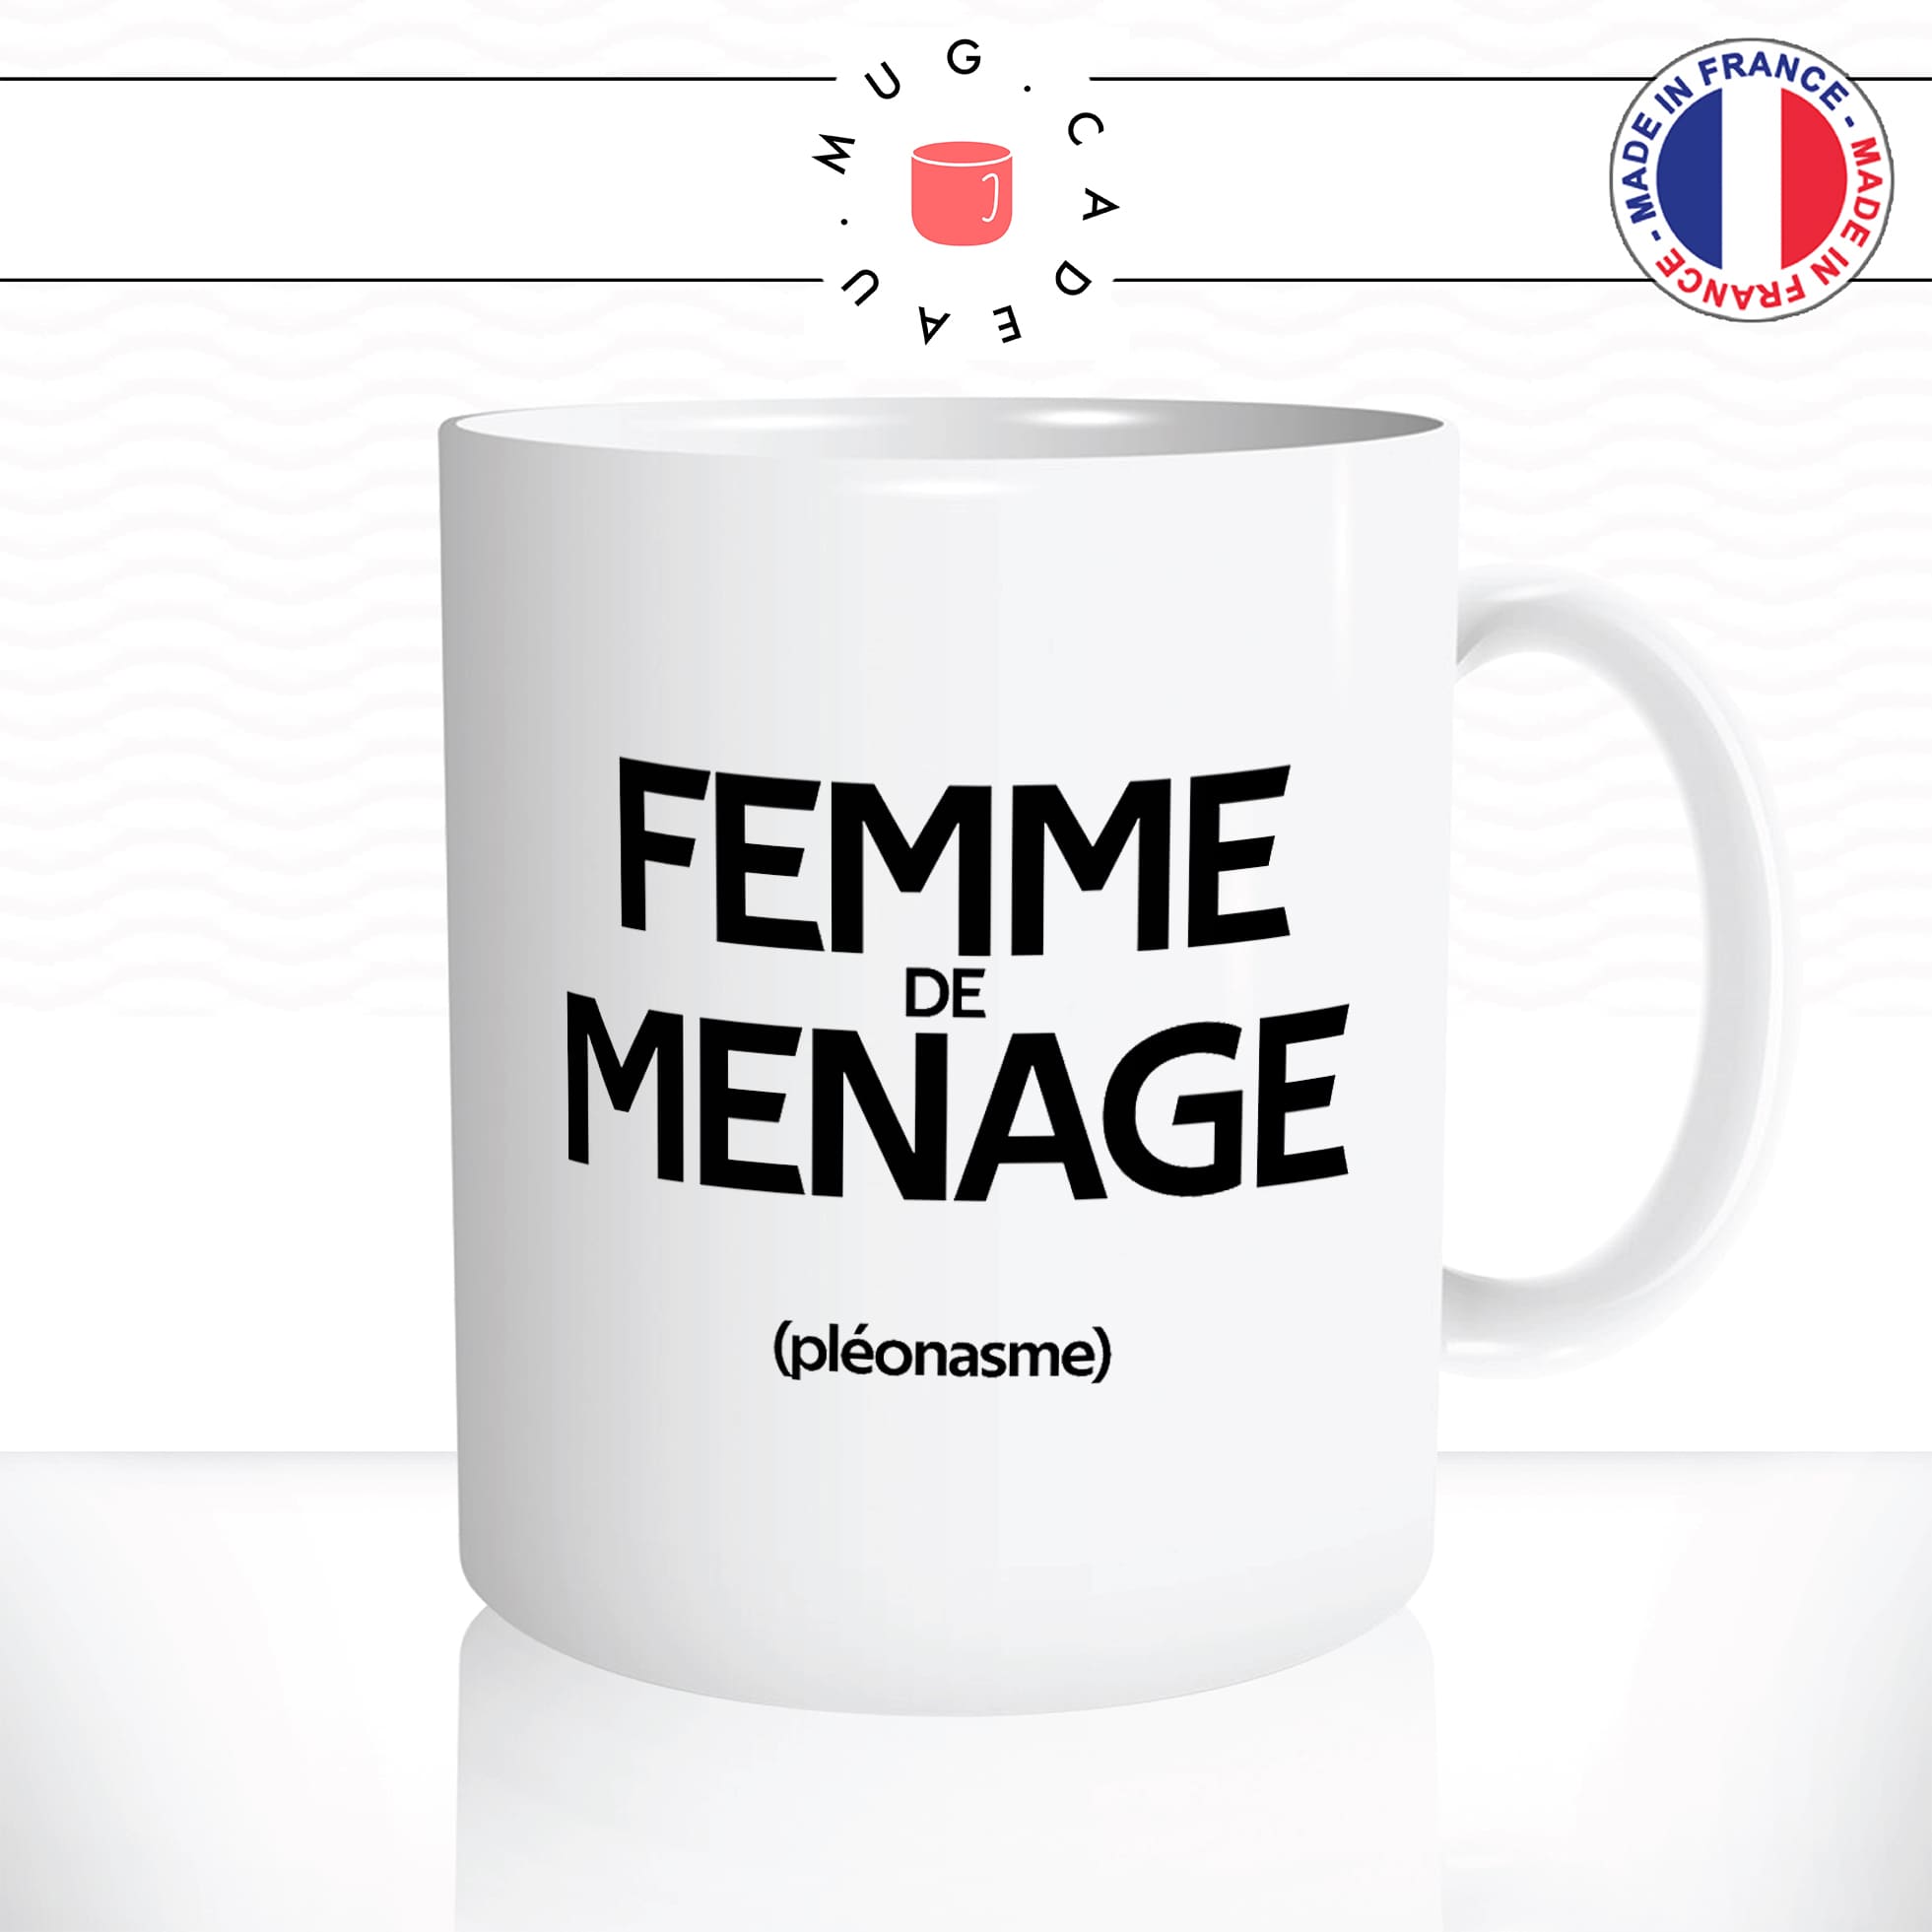 mug-tasse-blanc-femme-de-ménage-pénible-couple-pléonasme-couzine-synonymes-copine-humour-fun-idée-cadeau-originale-cool2